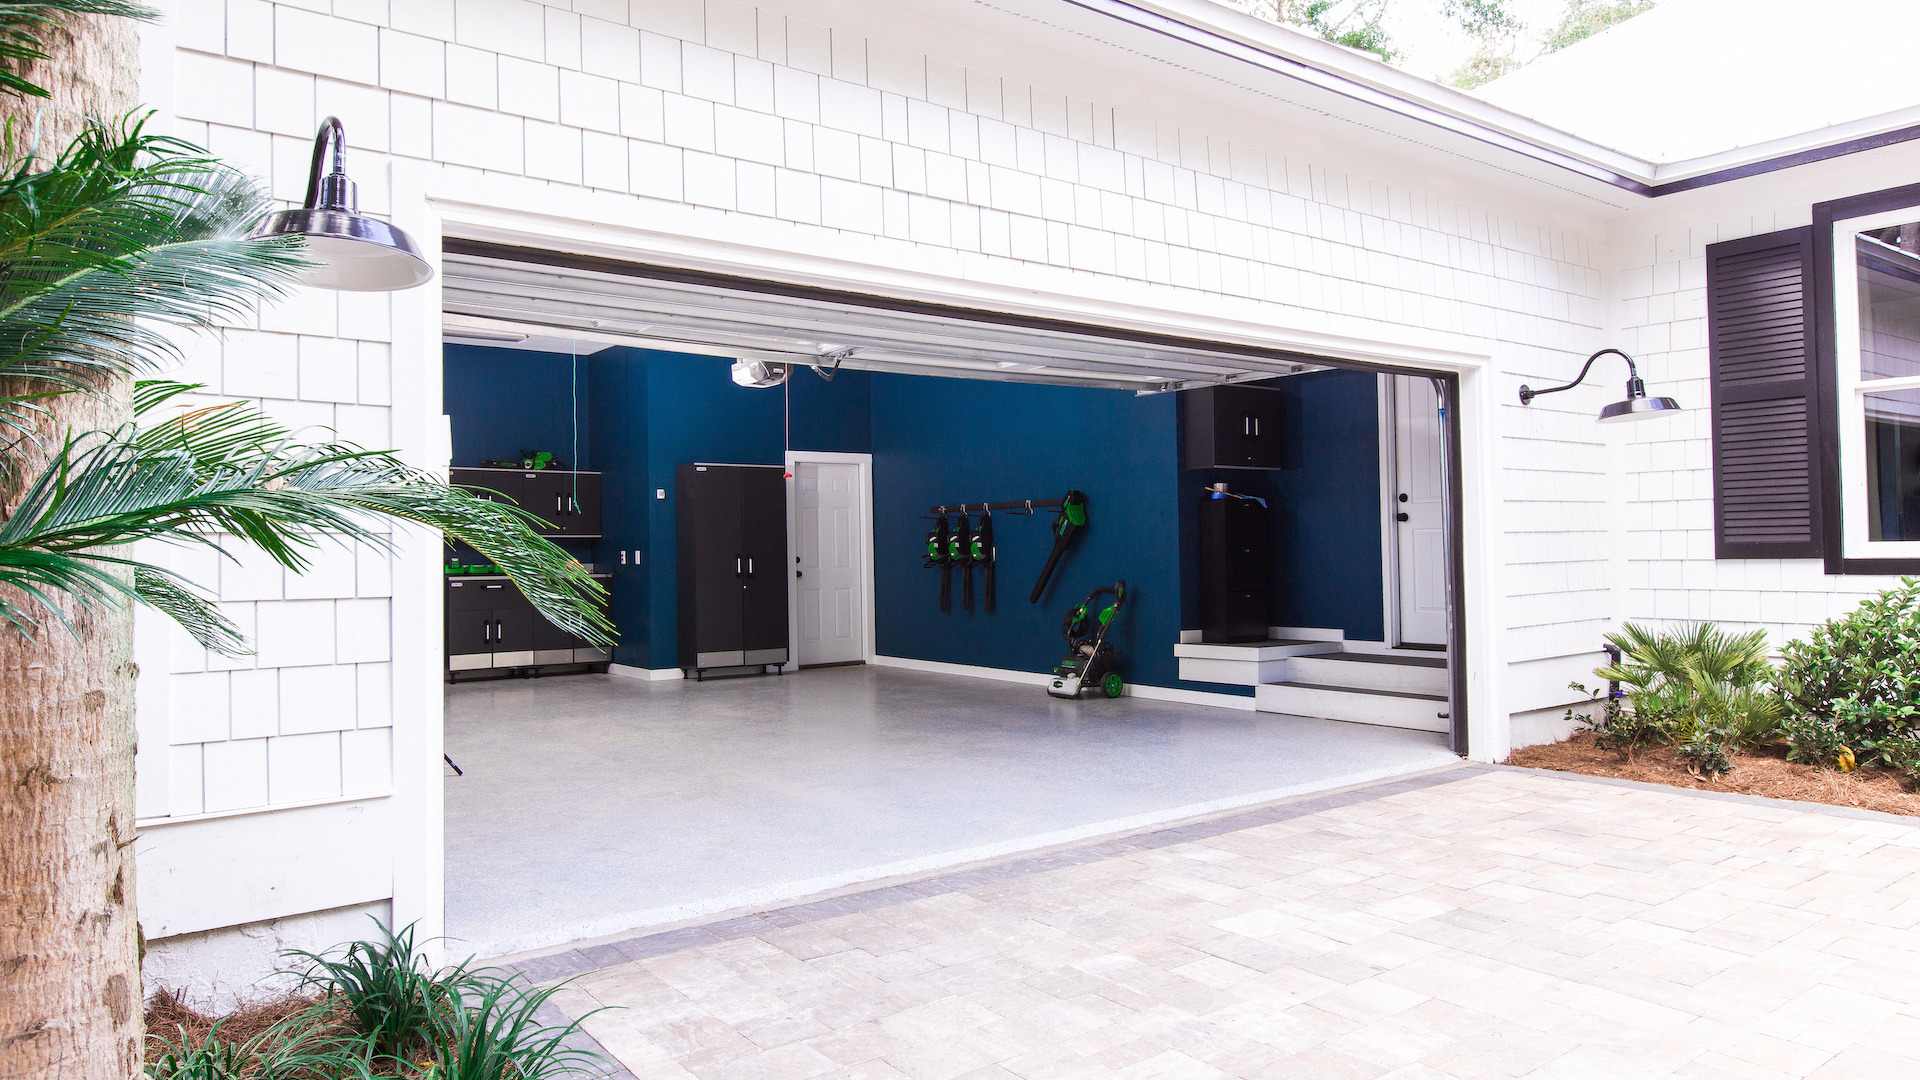 03 Un suelo de garaje ligeramente más alto que el exterior con una breve pendiente